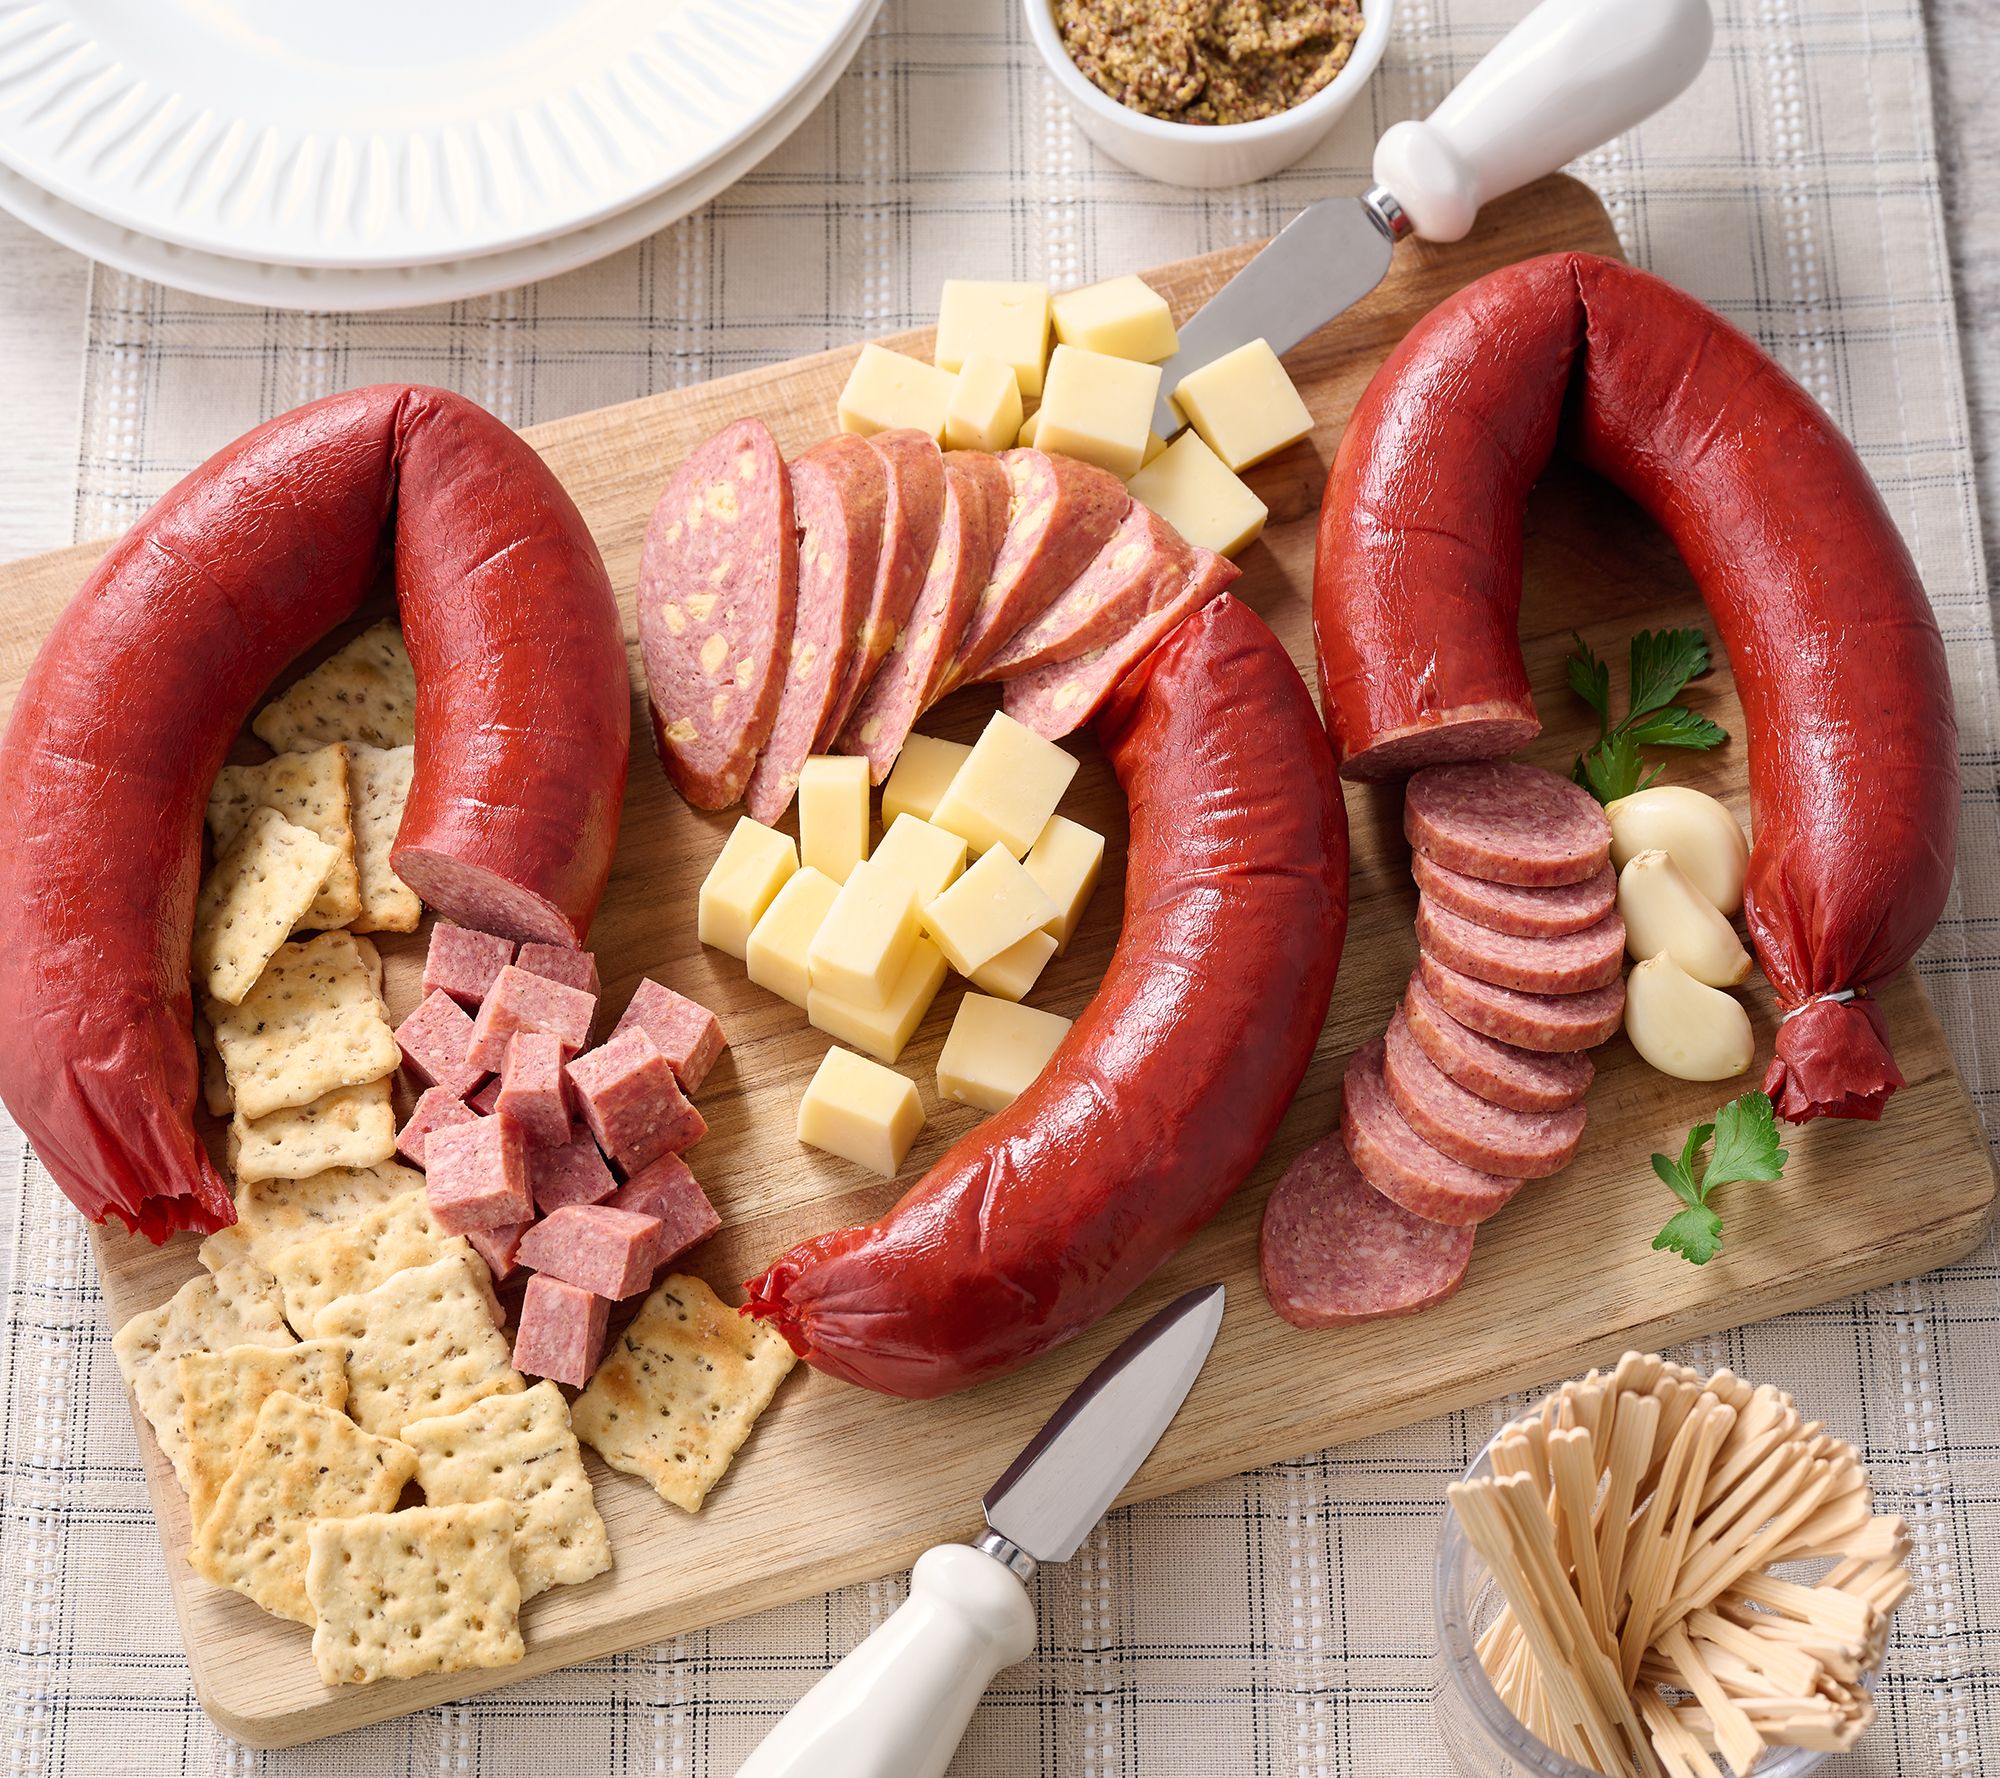 Jumbo Ring Bologna - Smoked Sausage - LeRoy Meats